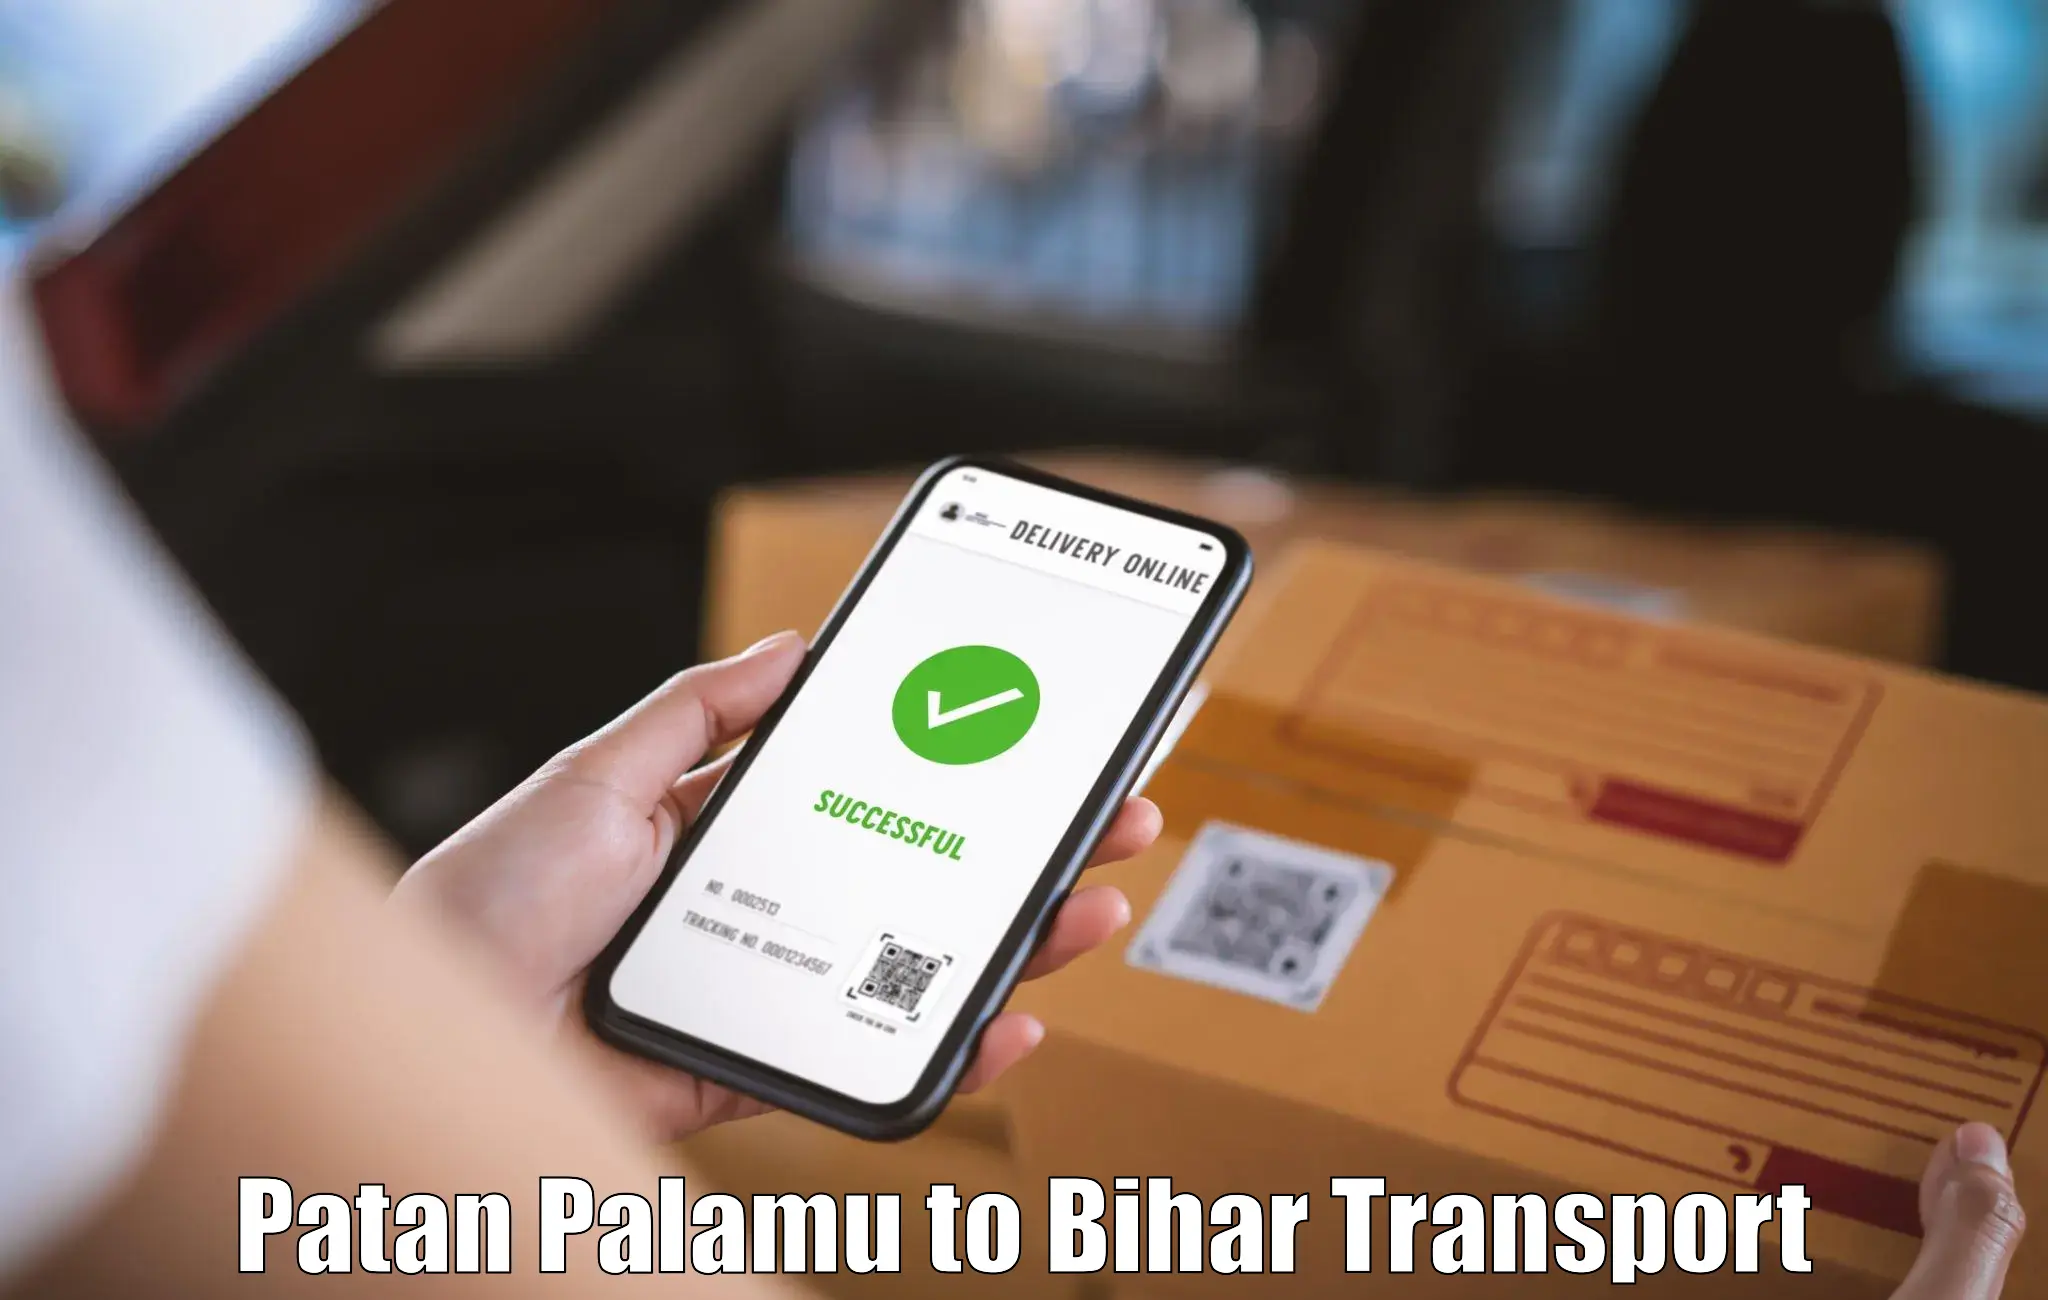 Logistics transportation services Patan Palamu to Bihar